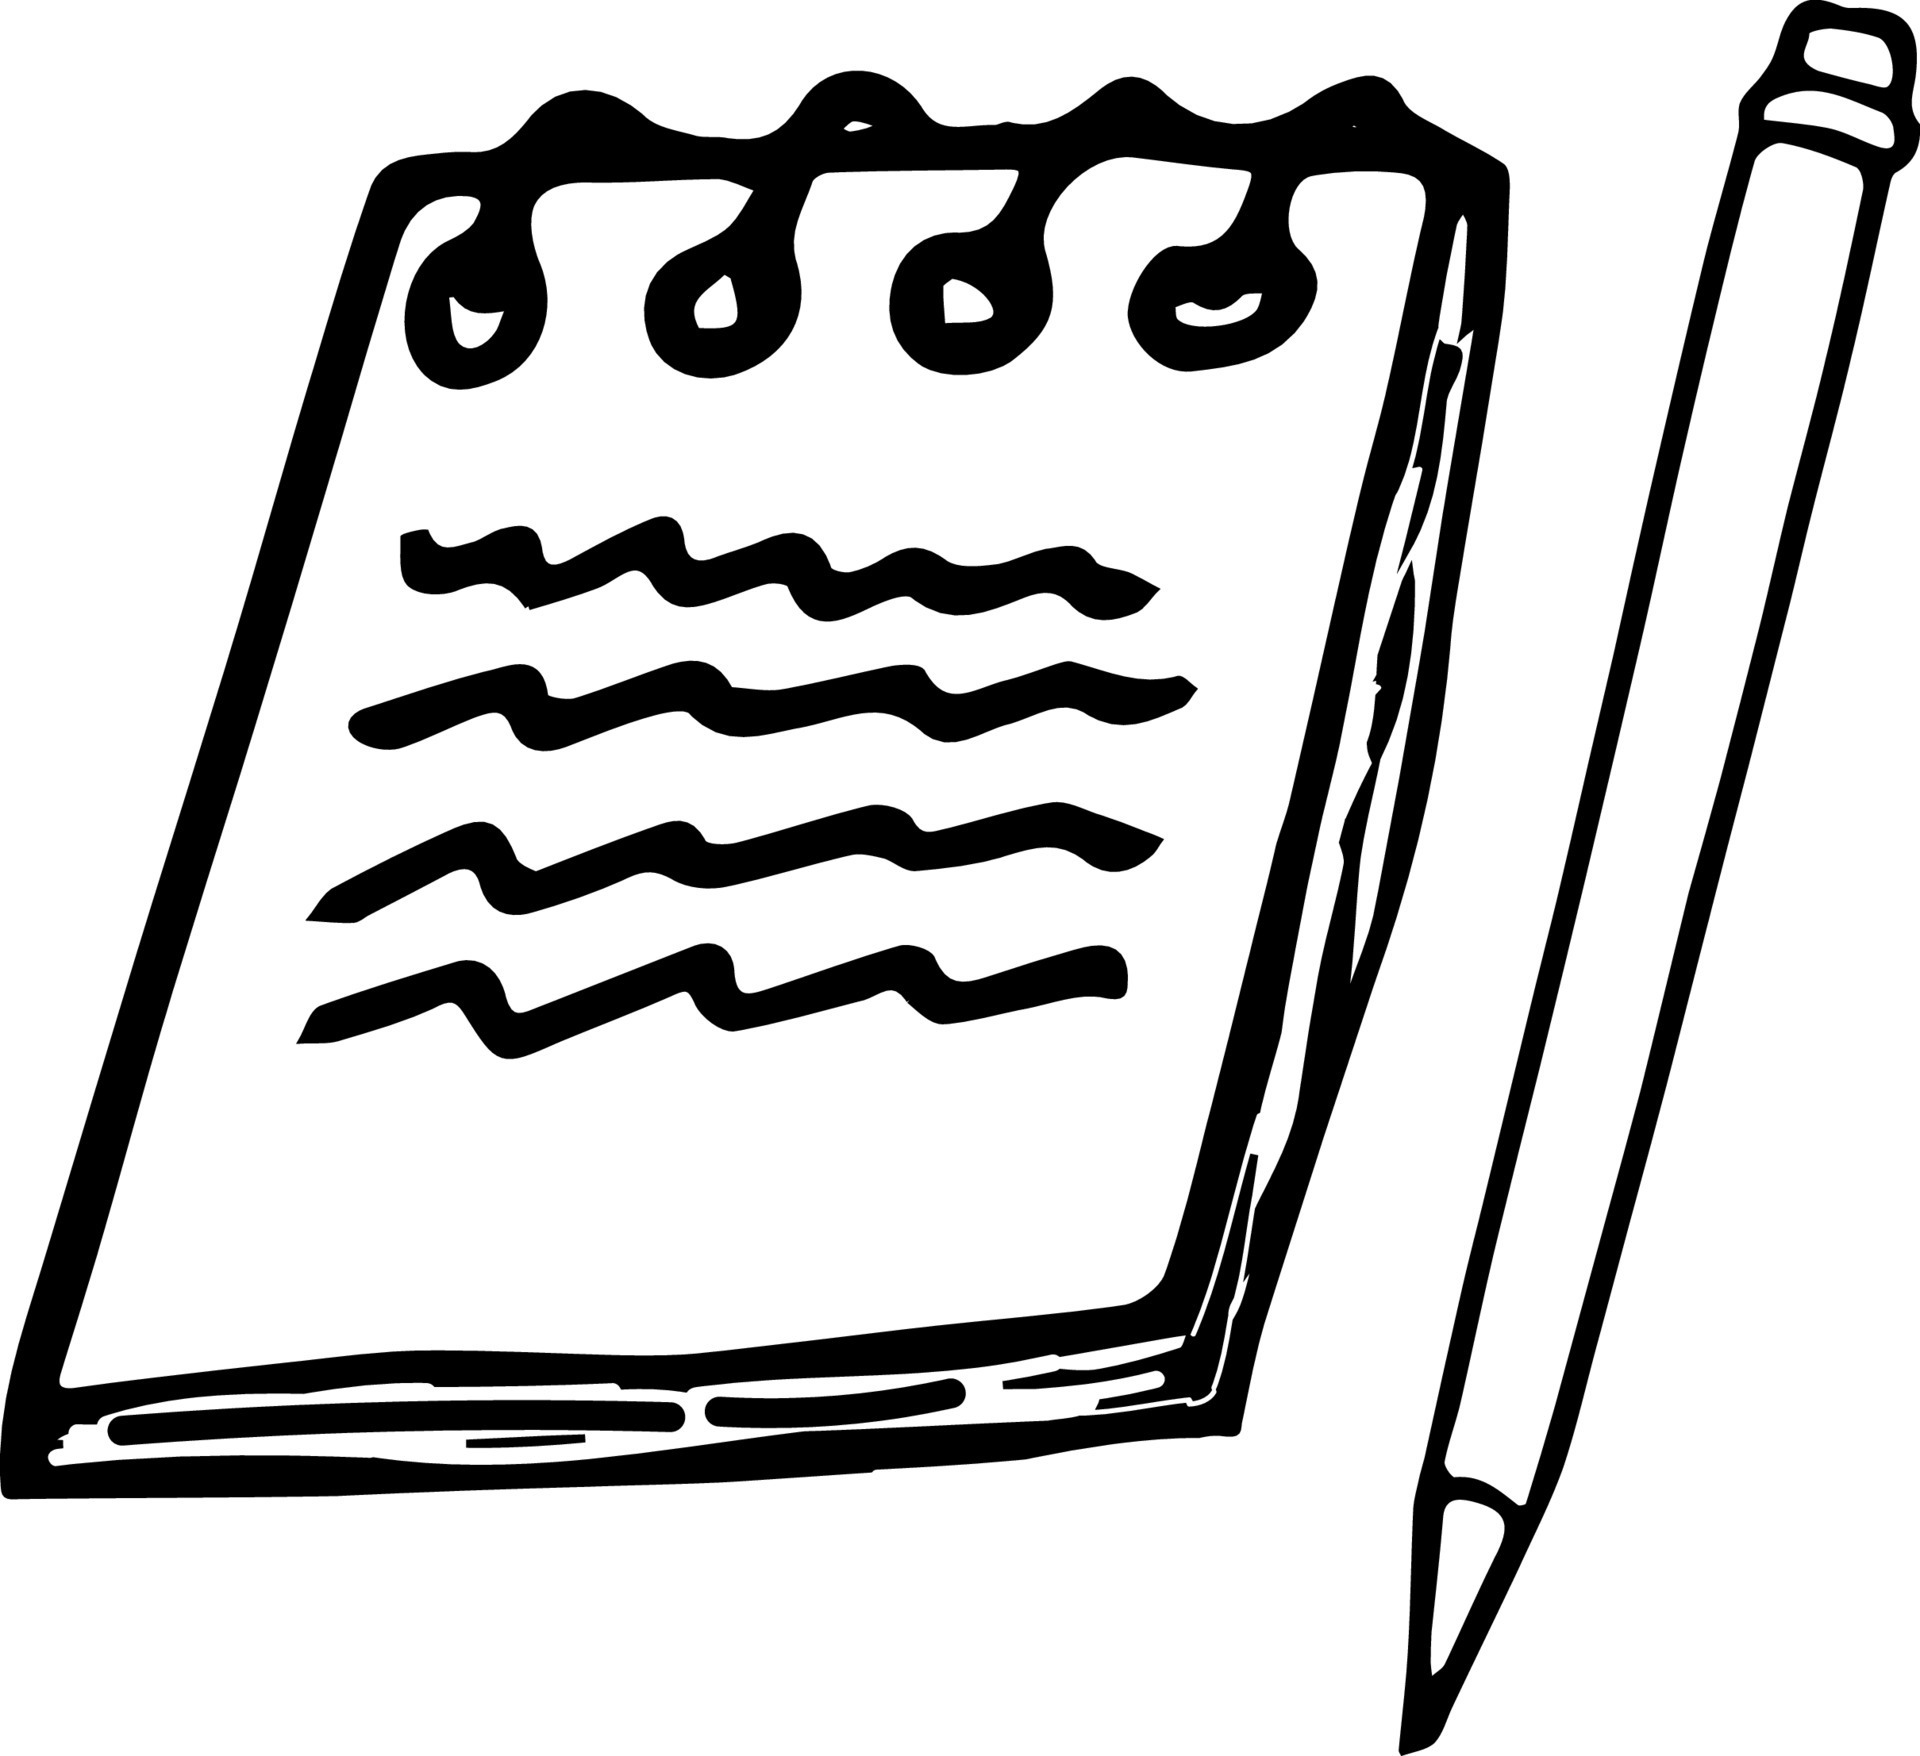 Bloc-notes autocollants Doodle en spirale, étiquettes de bloc